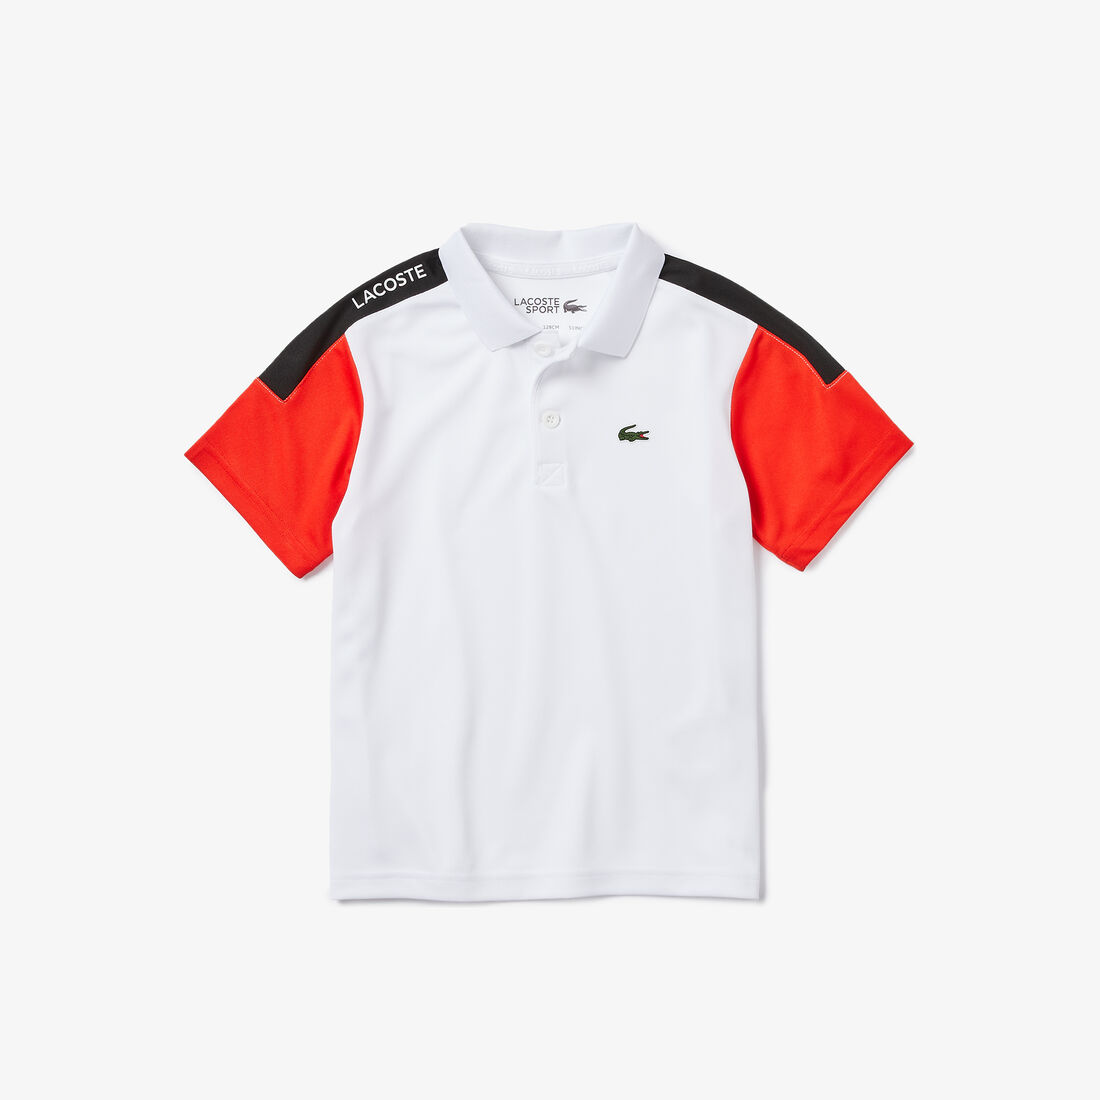 قميص بولو للصبية للعب رياضة التنس، من قماش يسمح بمرور الهواء إلى الجسم، ومقاوم للتمزق من مجموعة Lacoste SPORT